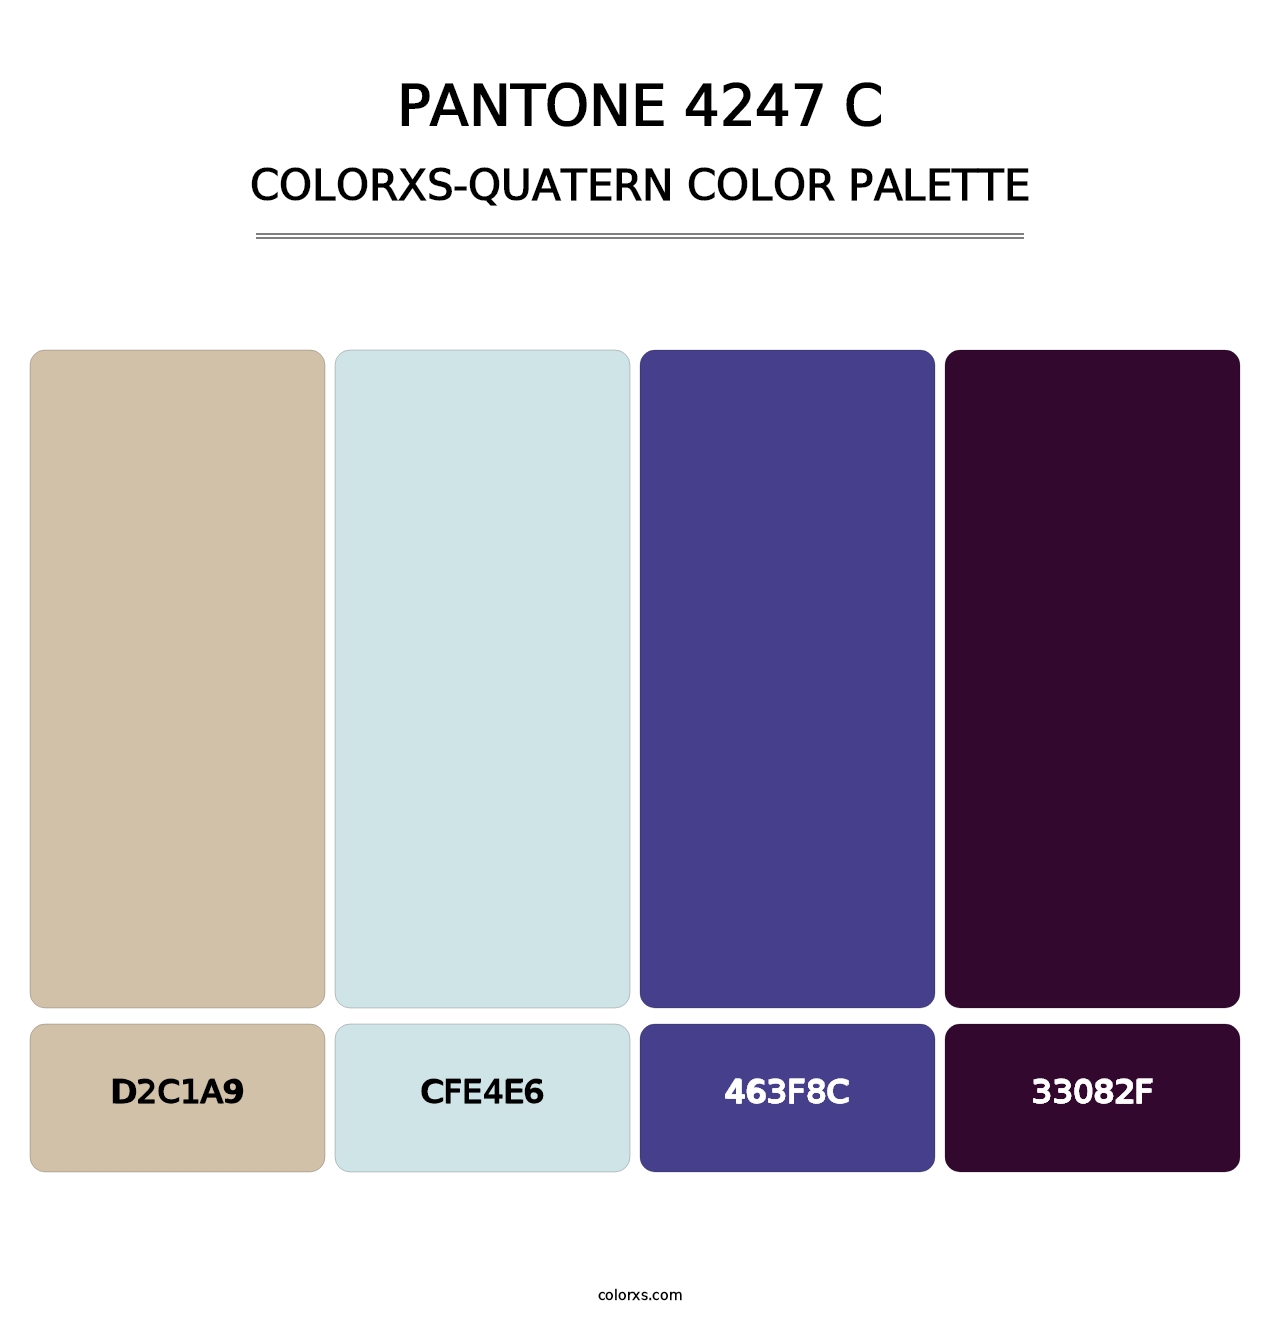 PANTONE 4247 C - Colorxs Quatern Palette